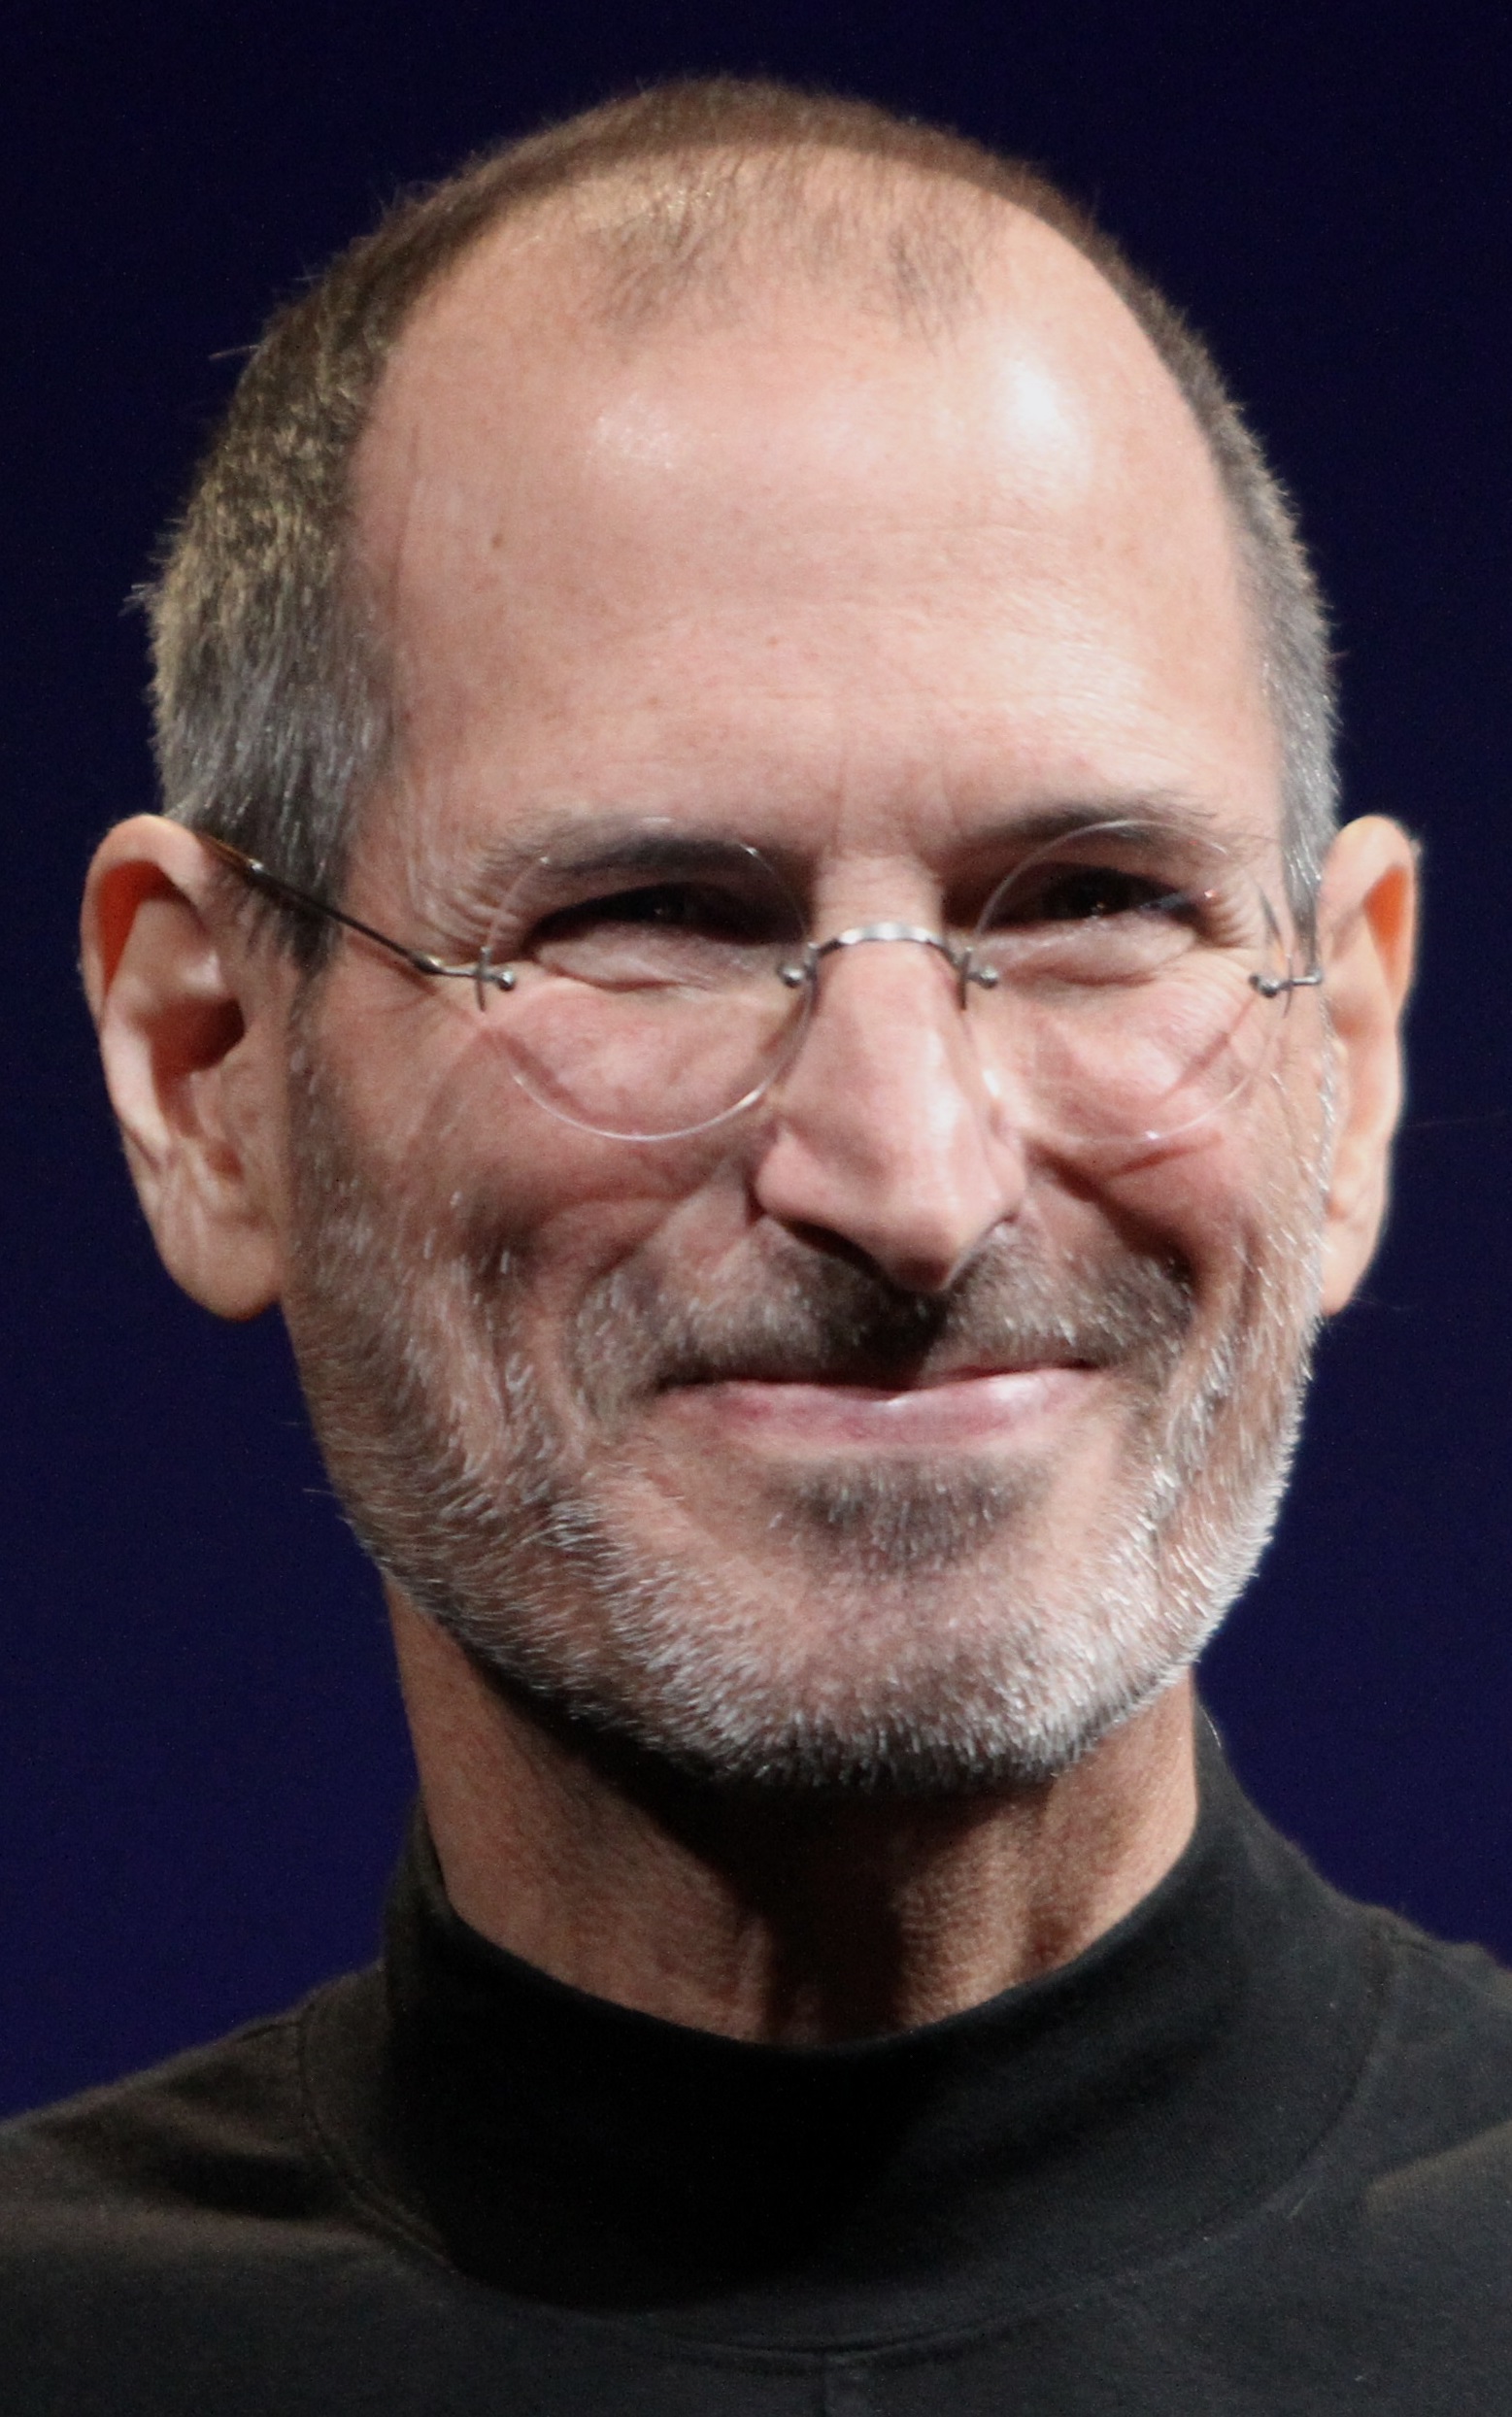 VNT #340 - Melhores Momentos - VNT 242 - Steve Jobs - Dois filmes fantásticos para você conhecer um cara que mudou o mundo